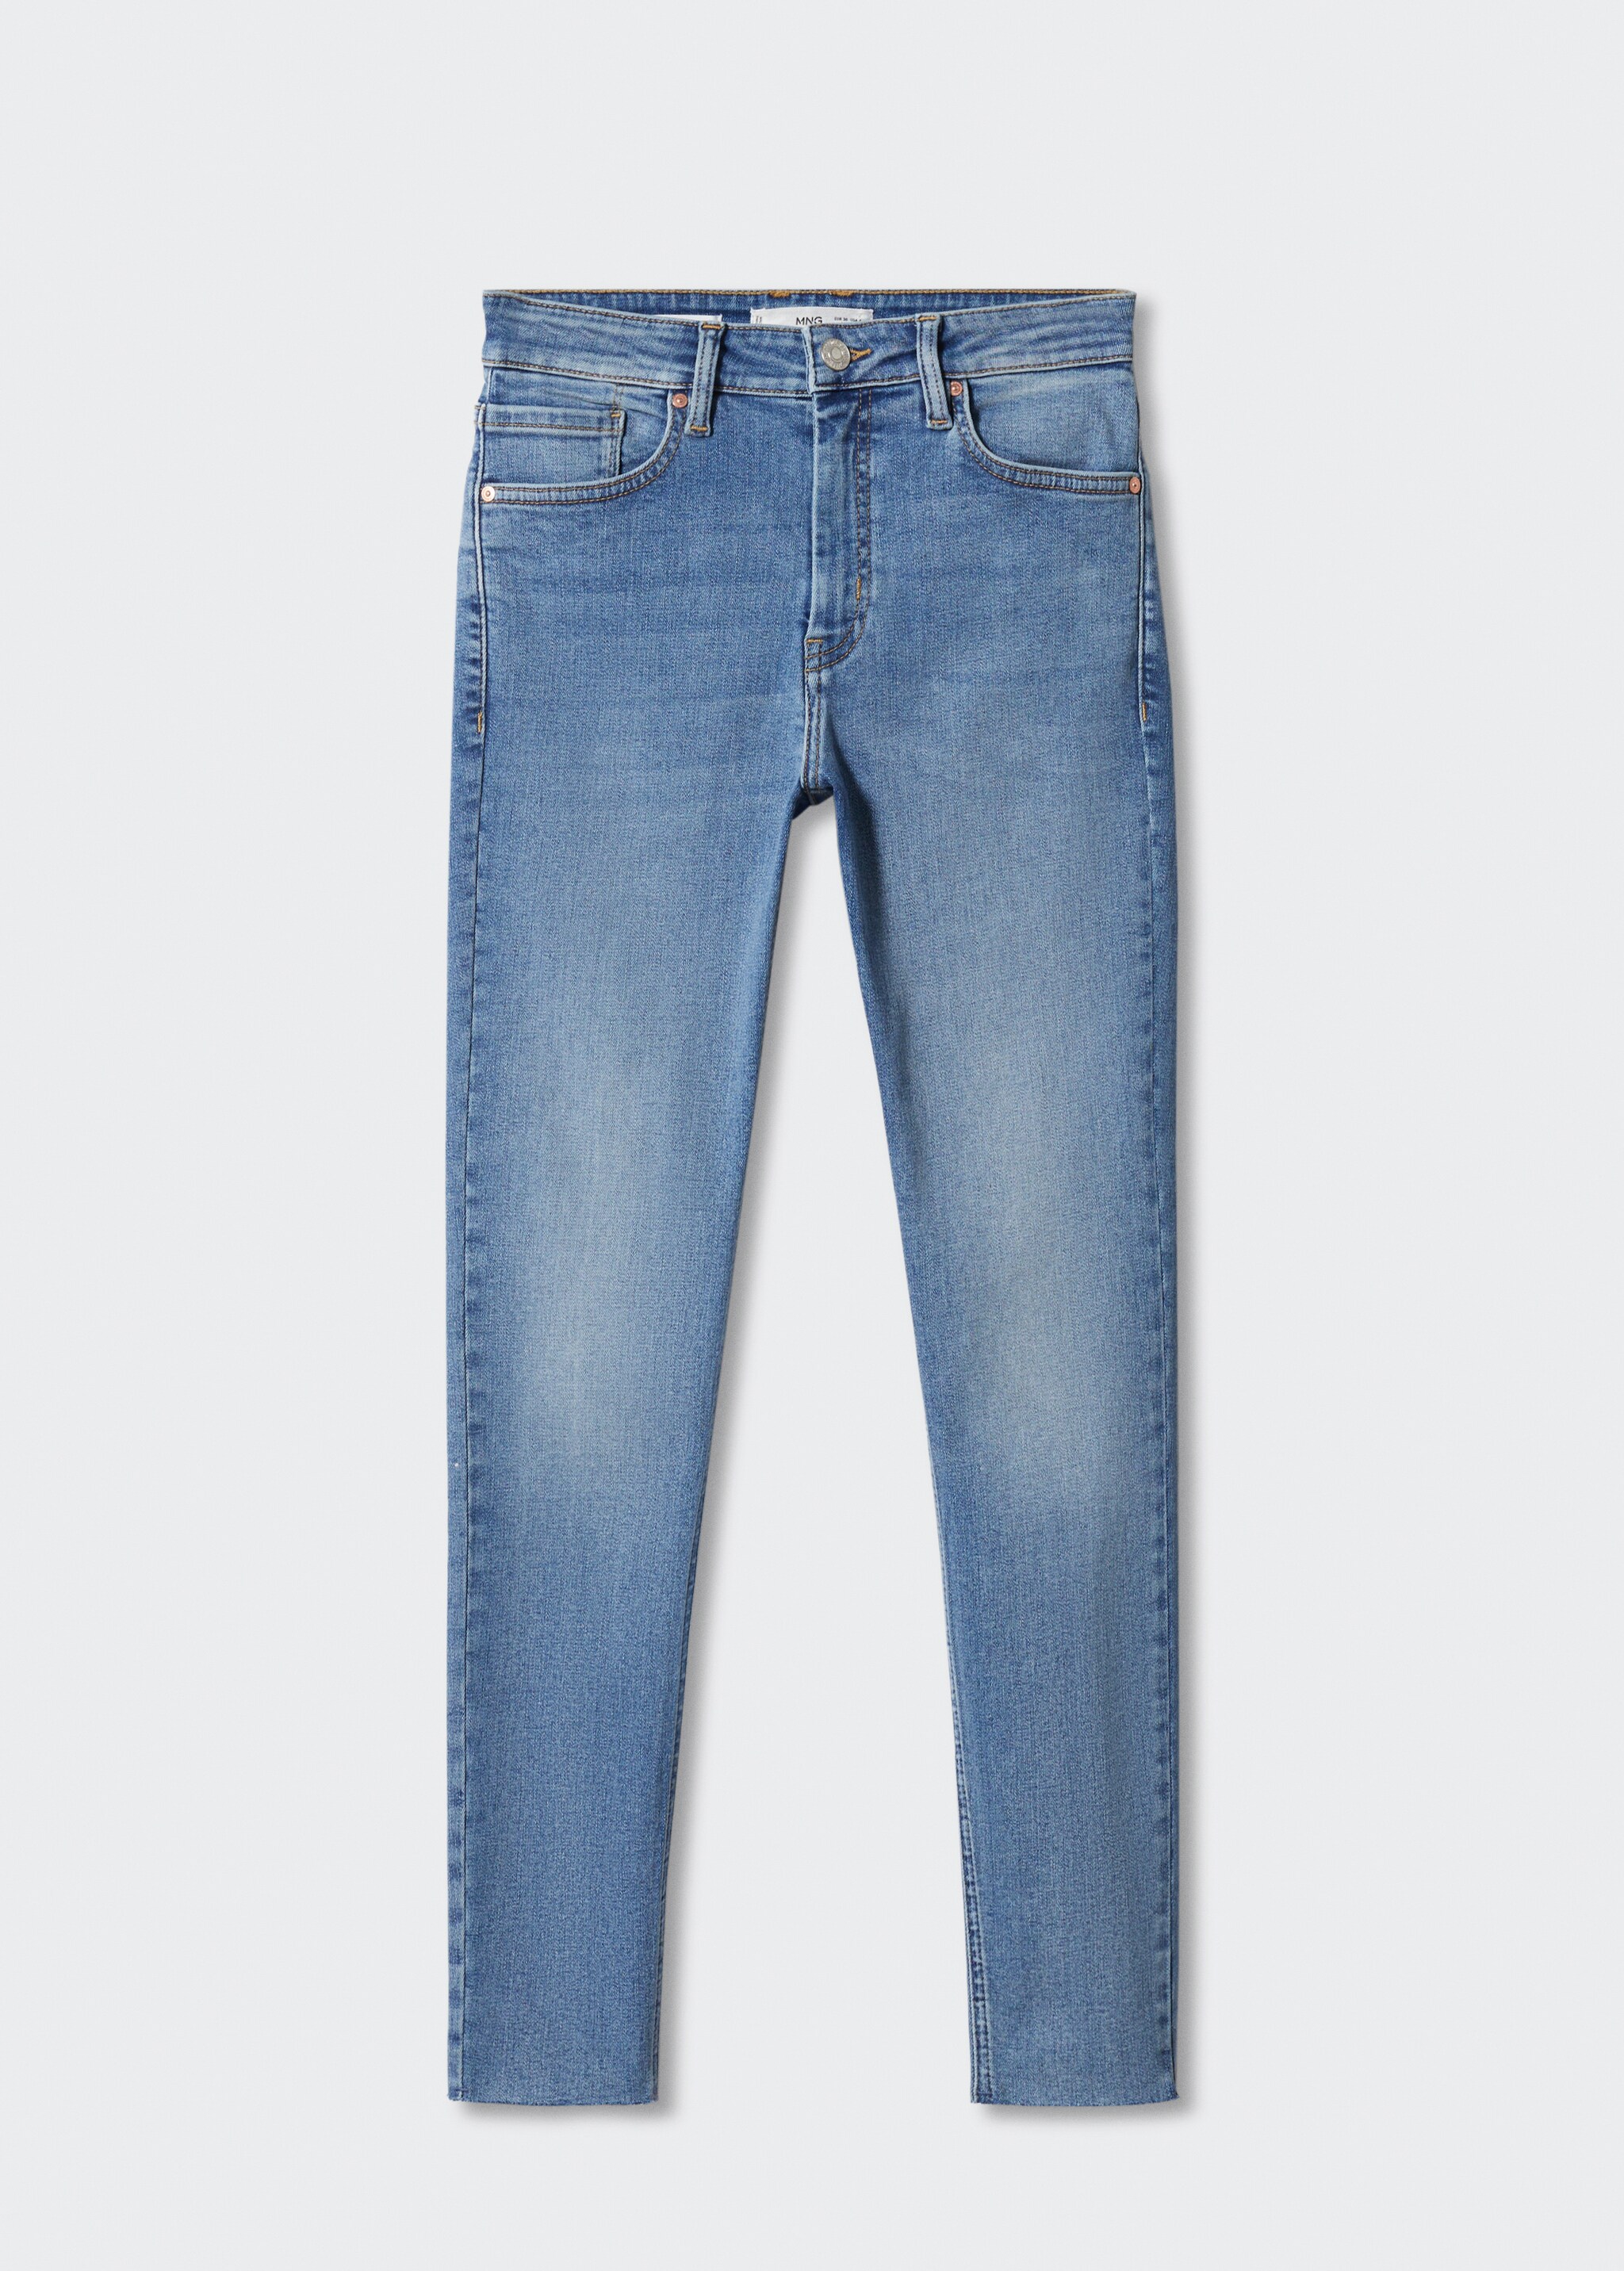 Skinny cropped jean - Modelsiz ürün